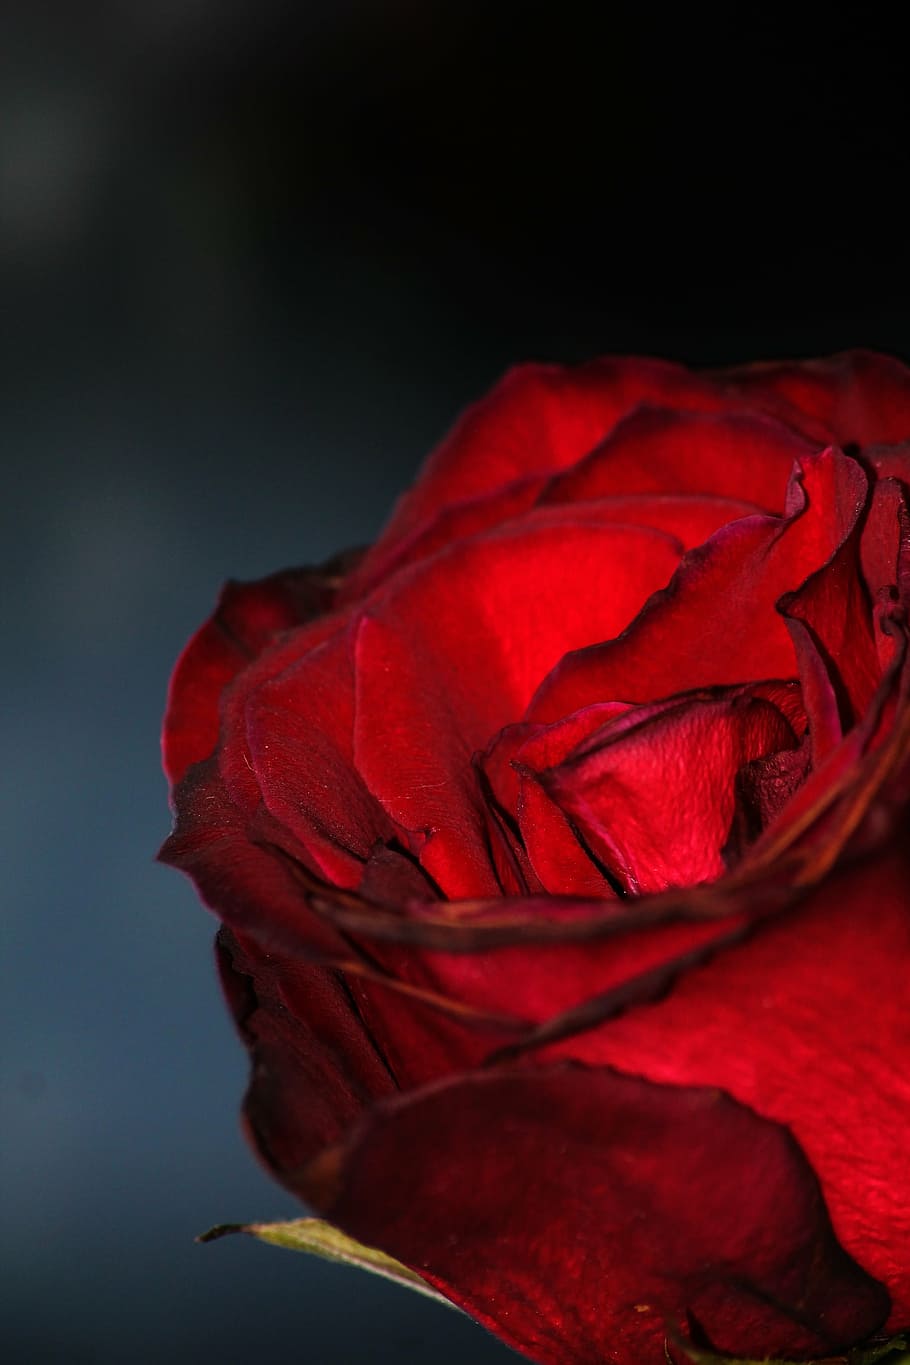 Blood roses 1080P, 2K, 4K, 5K HD wallpaper free download